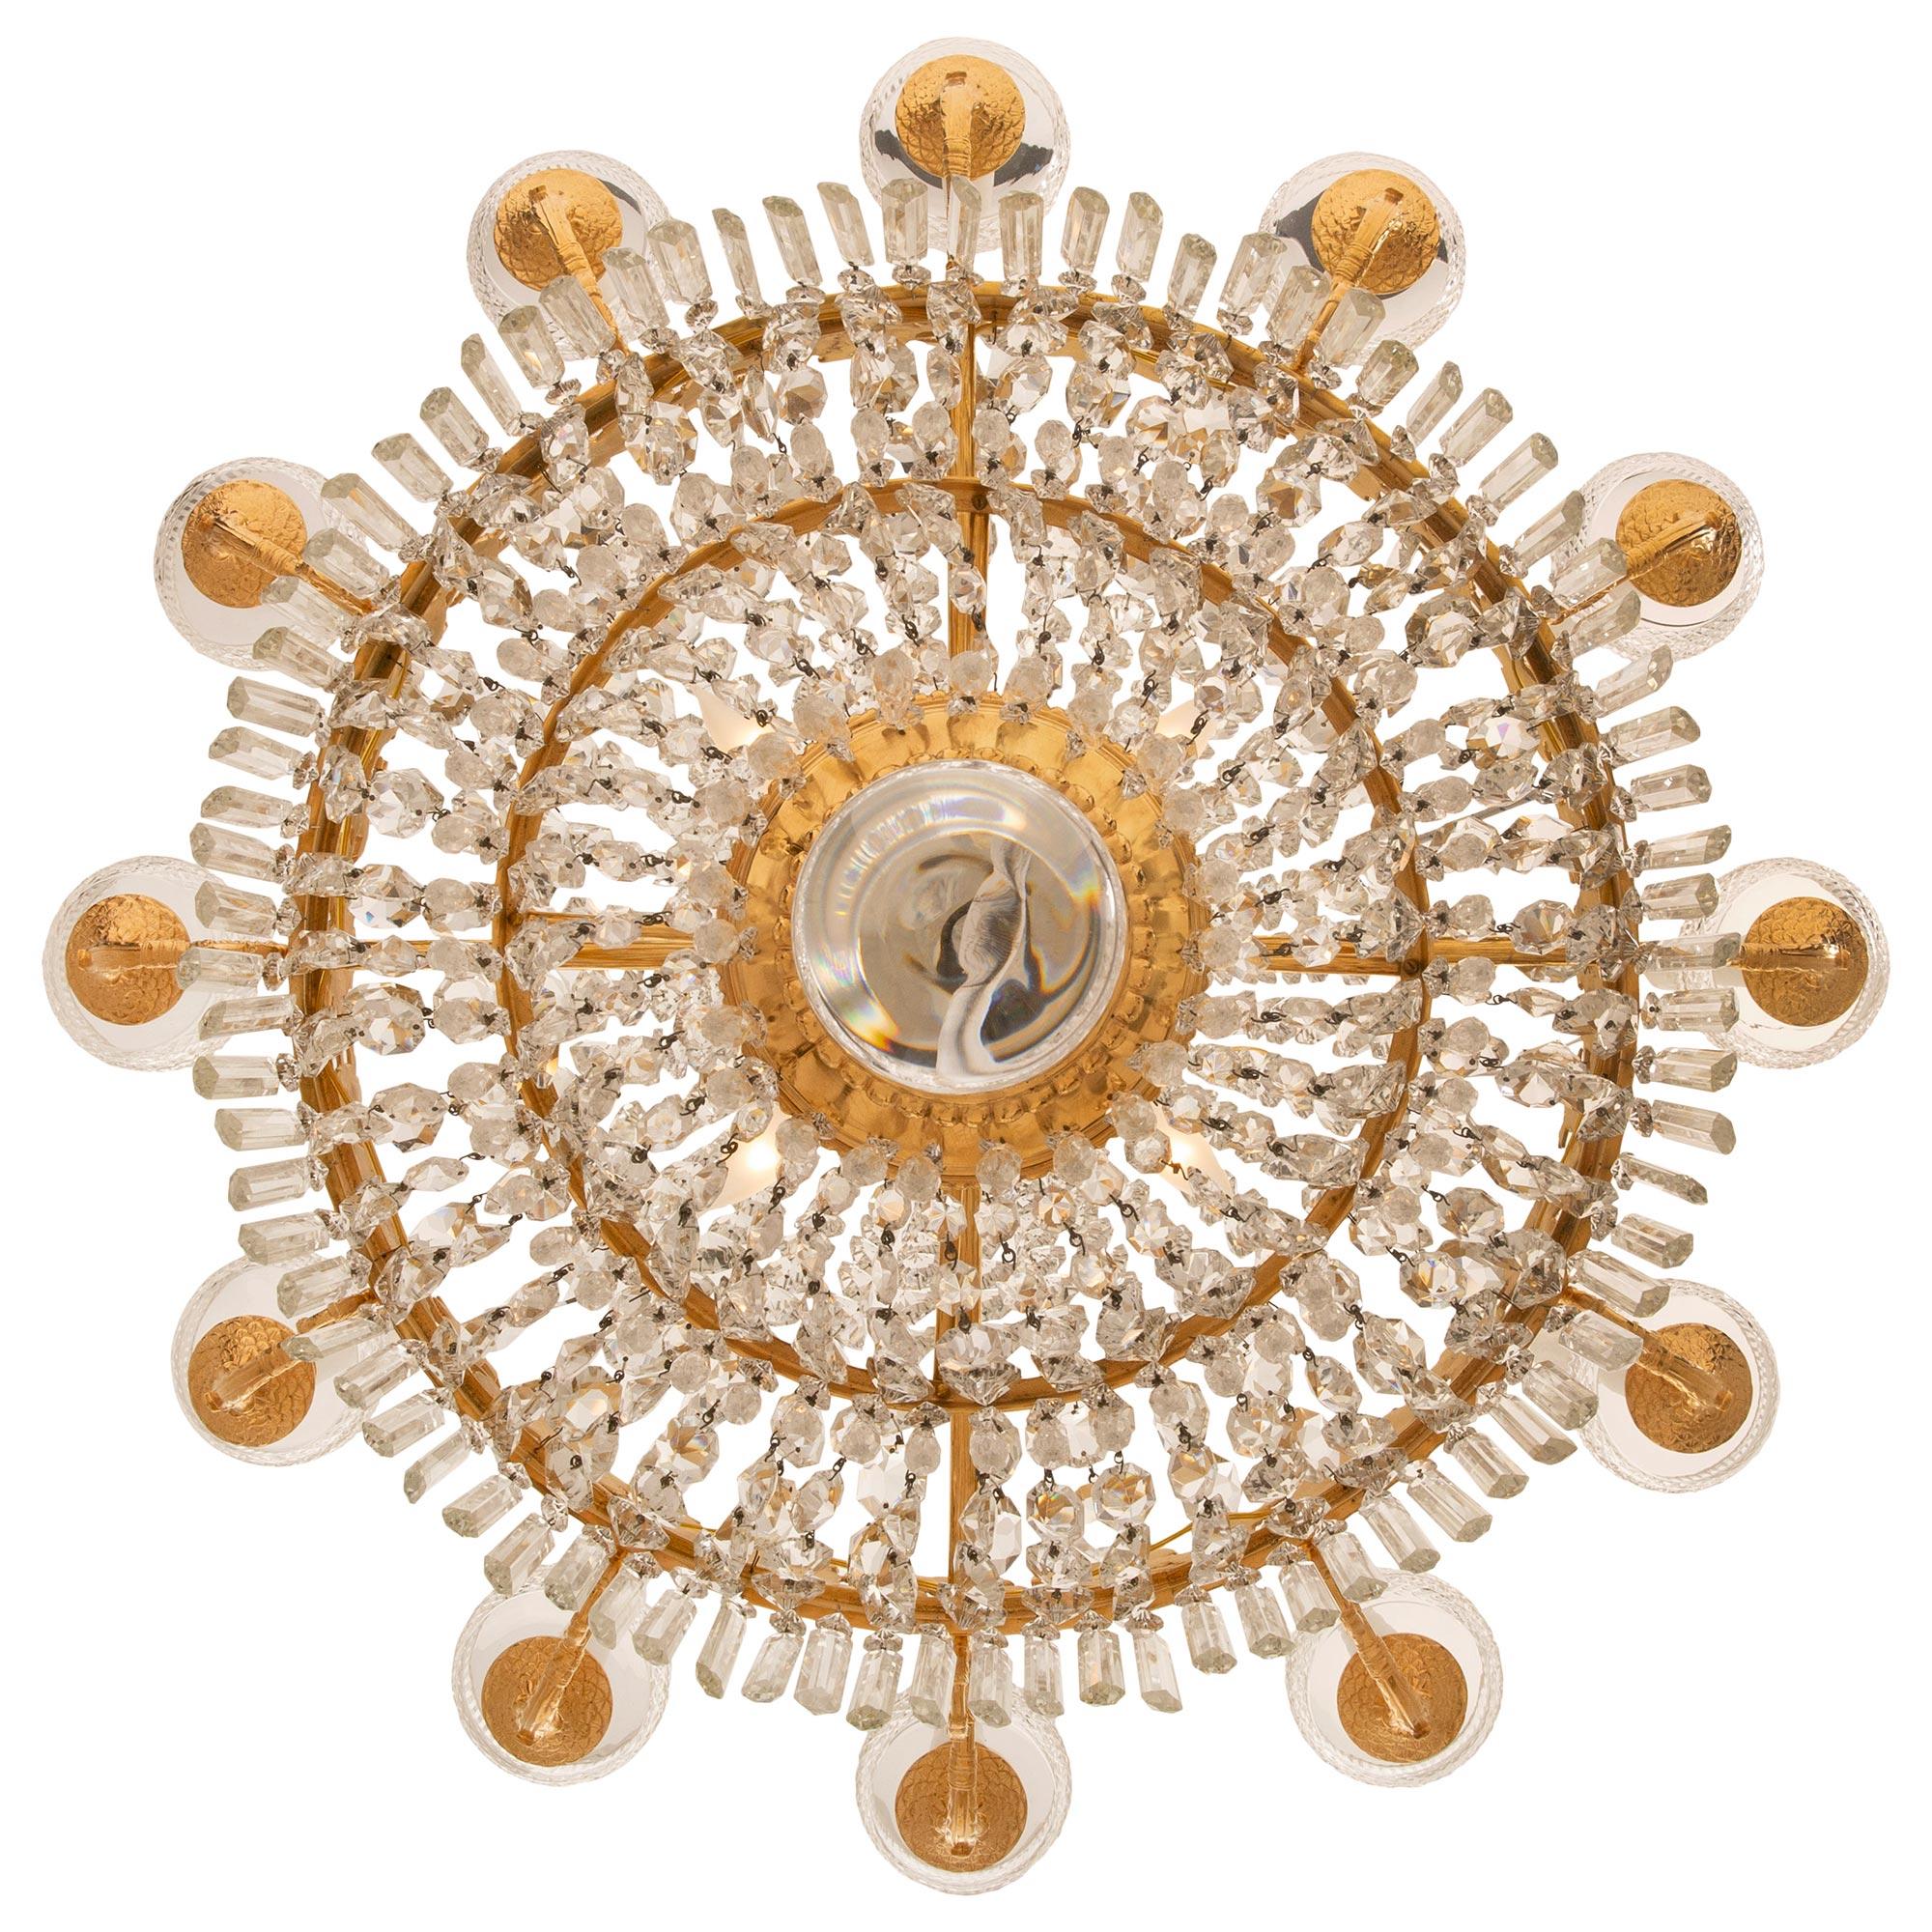 Ein schöner und sehr hochwertiger französischer Empire-Kronleuchter des 19. Jahrhunderts aus Ormolu und Baccarat-Kristall. Der zwölfarmige Kronleuchter mit sechzehn Lichtern wird von einer auffälligen, massiven Kristallkugel unter der hübschen,